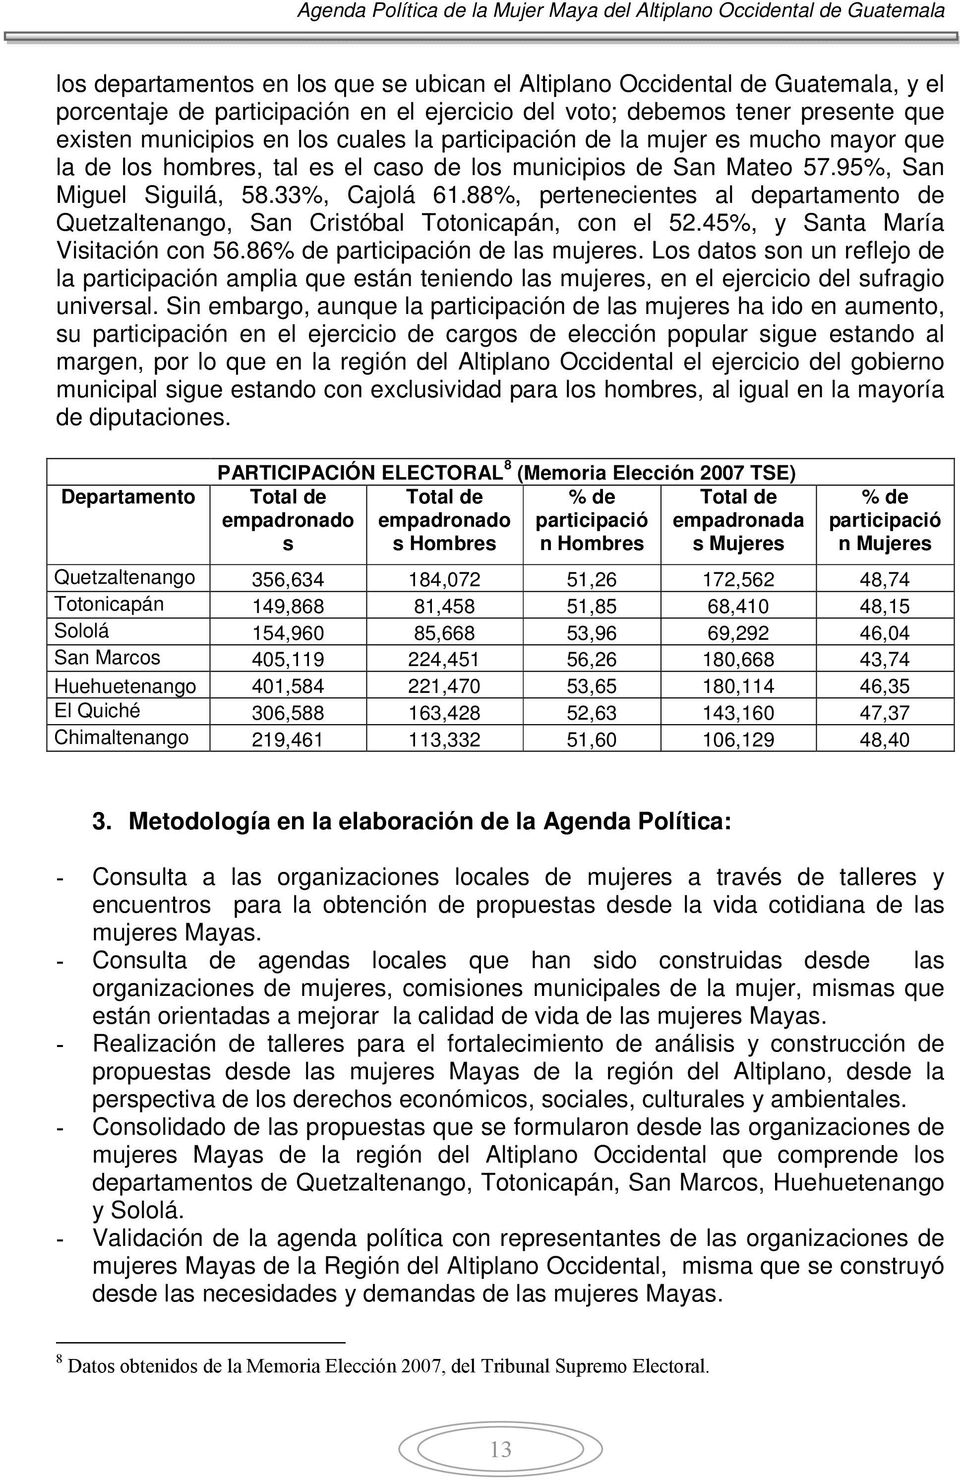 88%, pertenecientes al departamento de Quetzaltenango, San Cristóbal Totonicapán, con el 52.45%, y Santa María Visitación con 56.86% de participación de las mujeres.